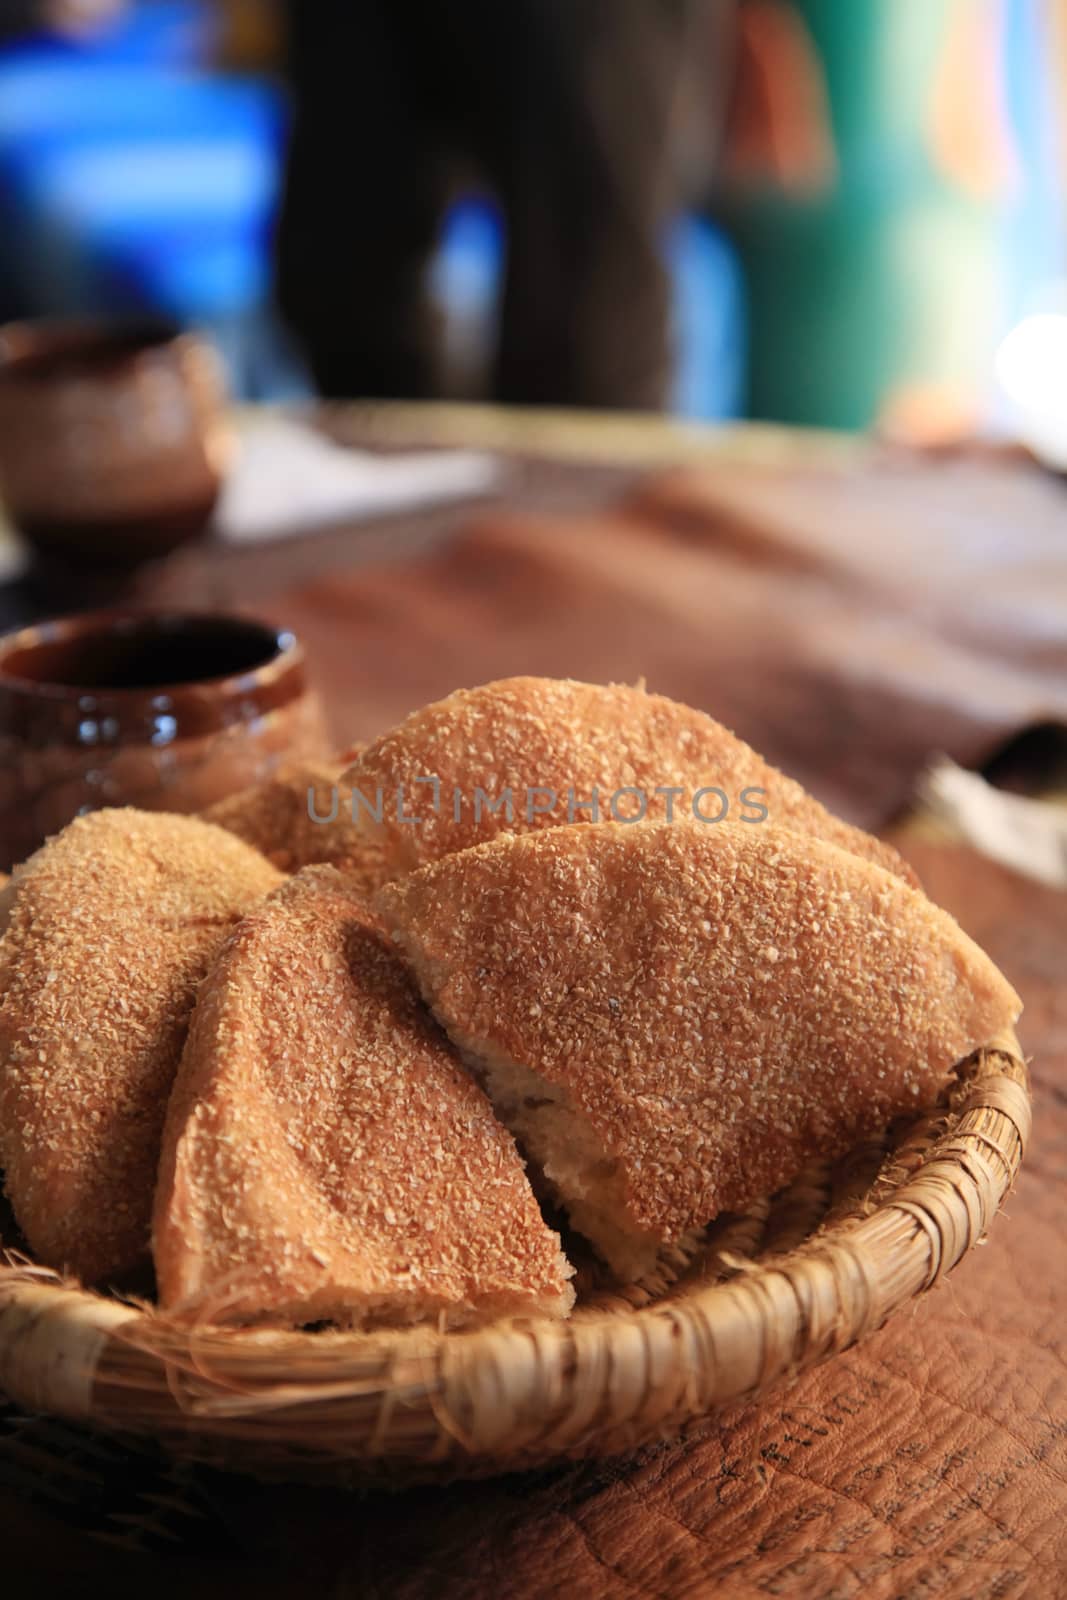 Moroccan Bread by kentoh